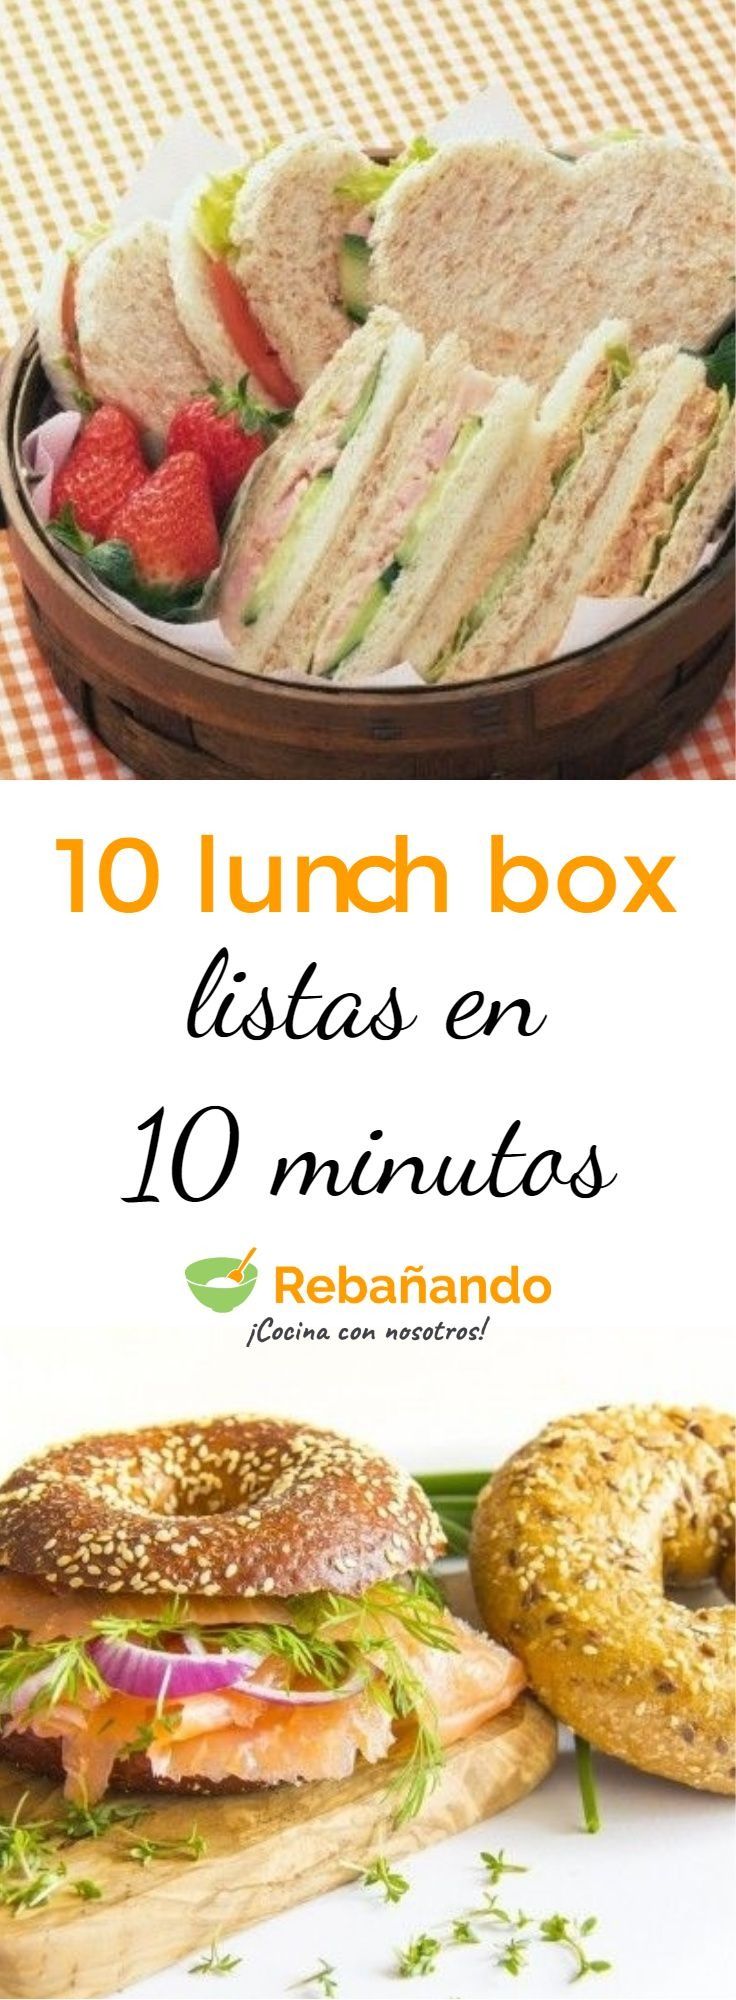 10 recetas para tu lunch box listas en 10 minutos